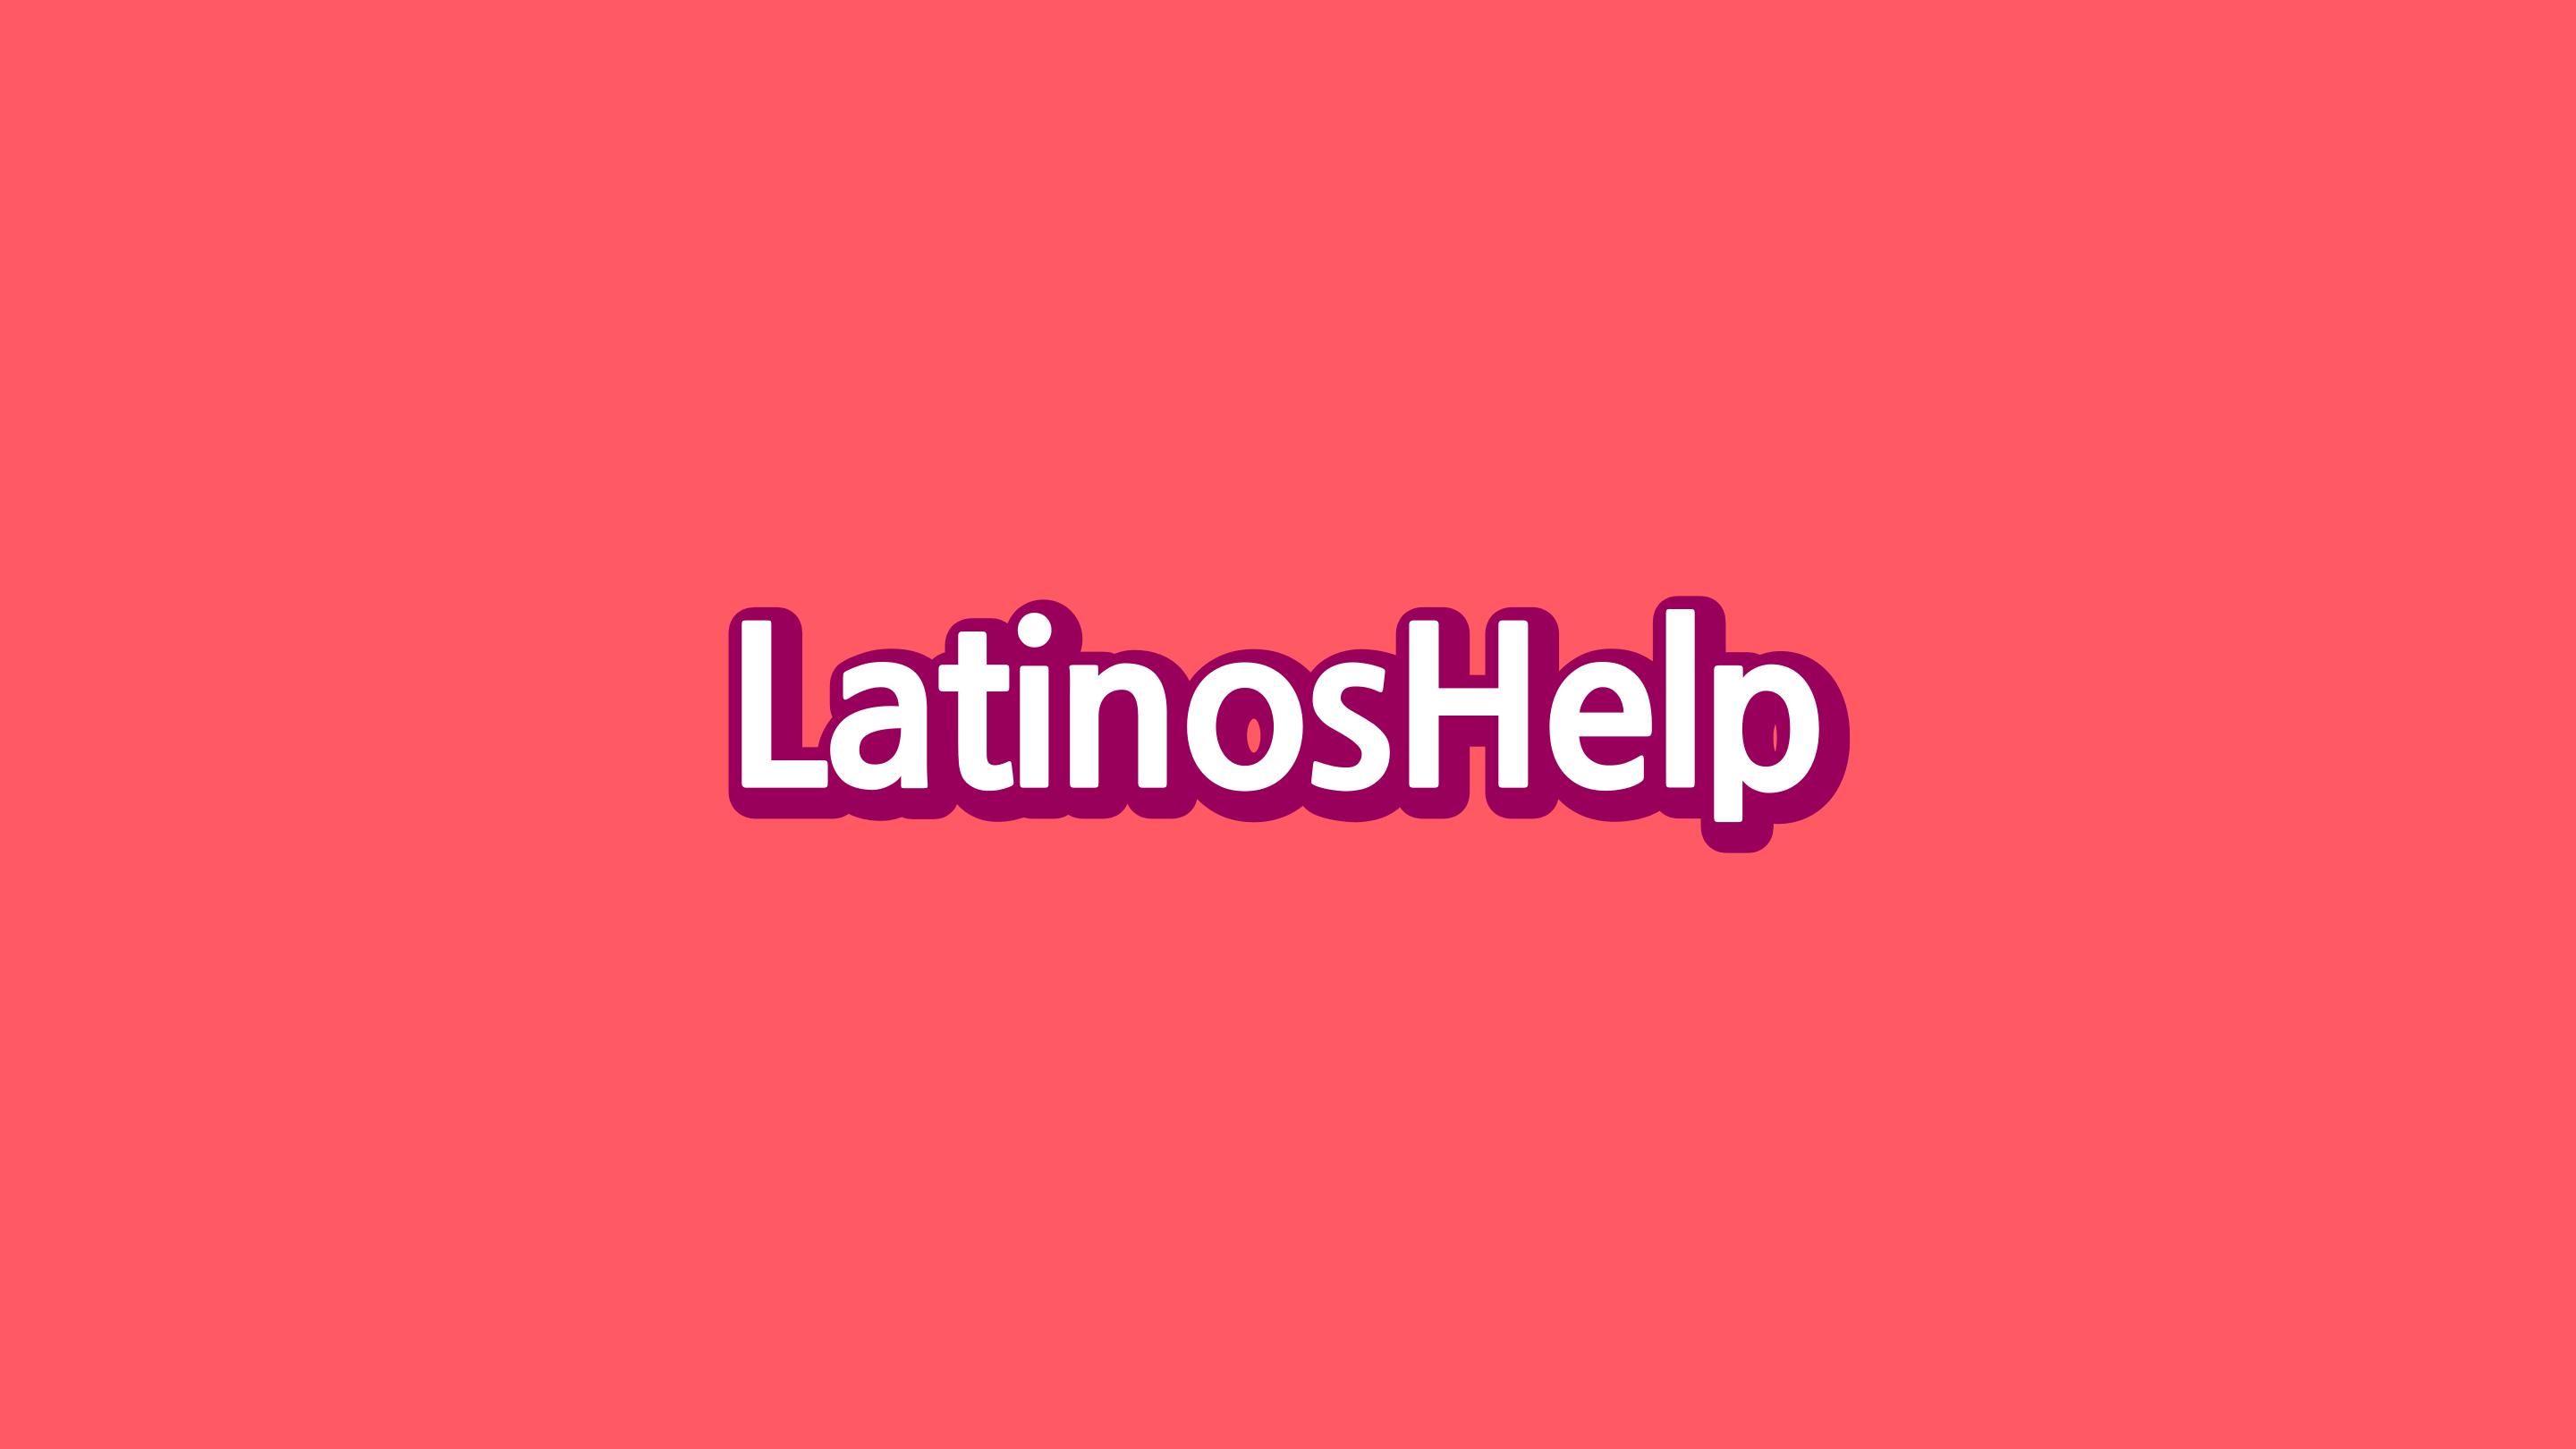 LatinosHelp